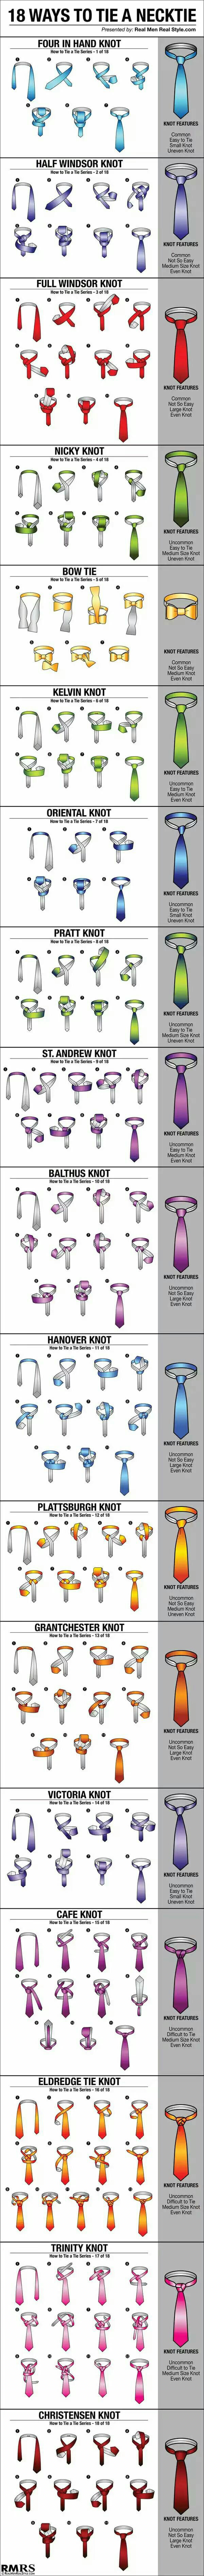 20160108 - How to tie your tie